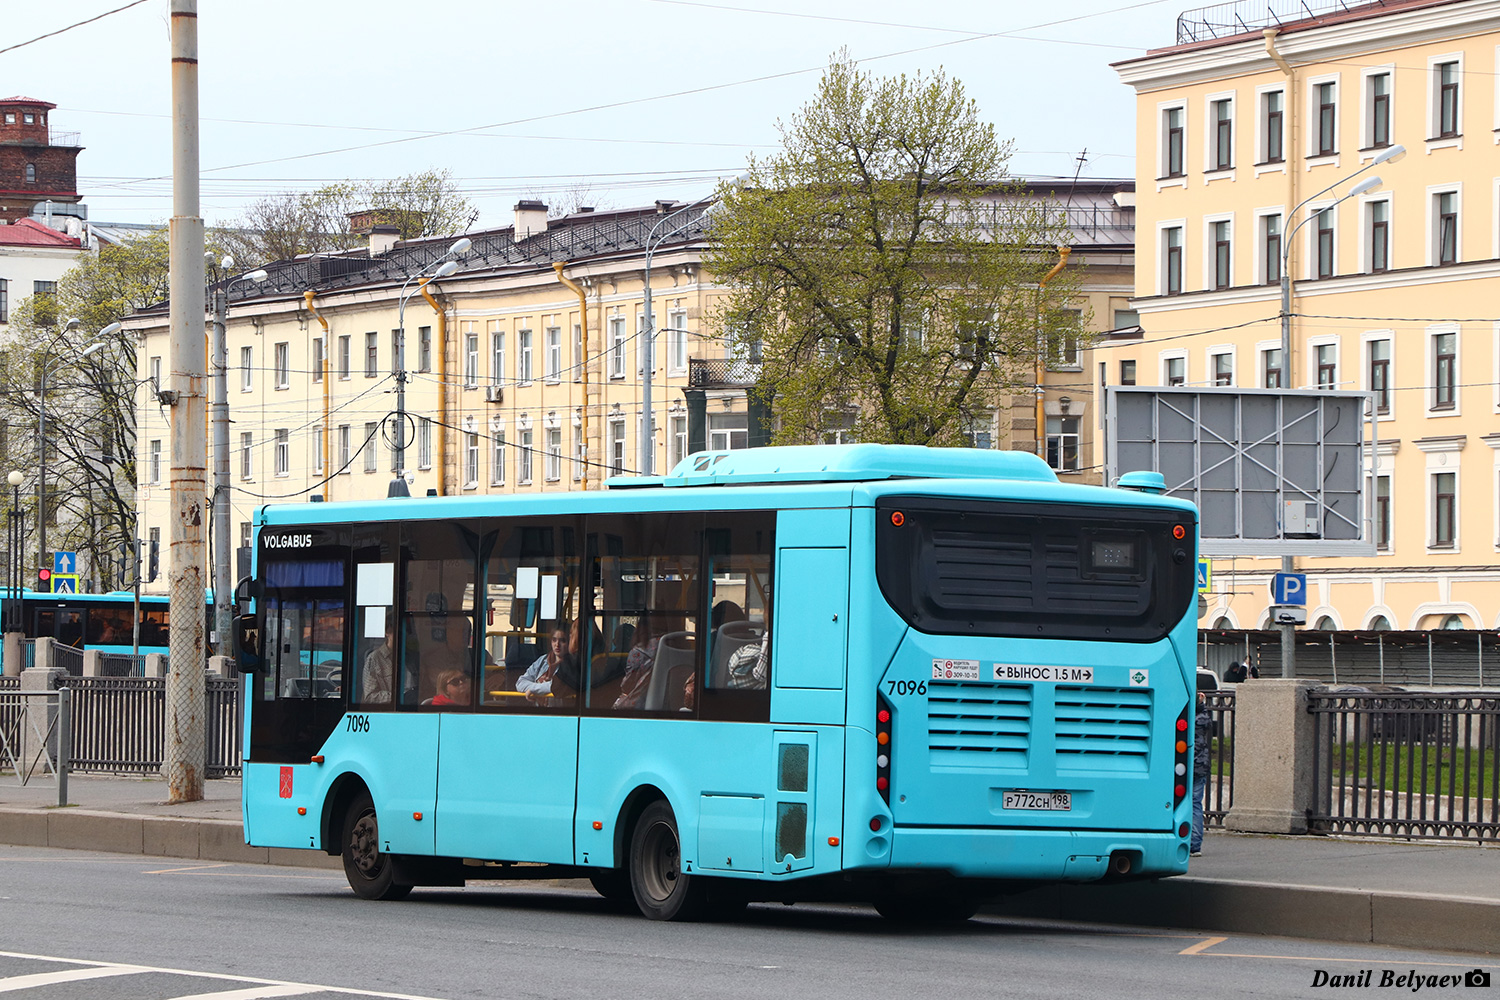 Sanktpēterburga, Volgabus-4298.G4 (LNG) № 7096